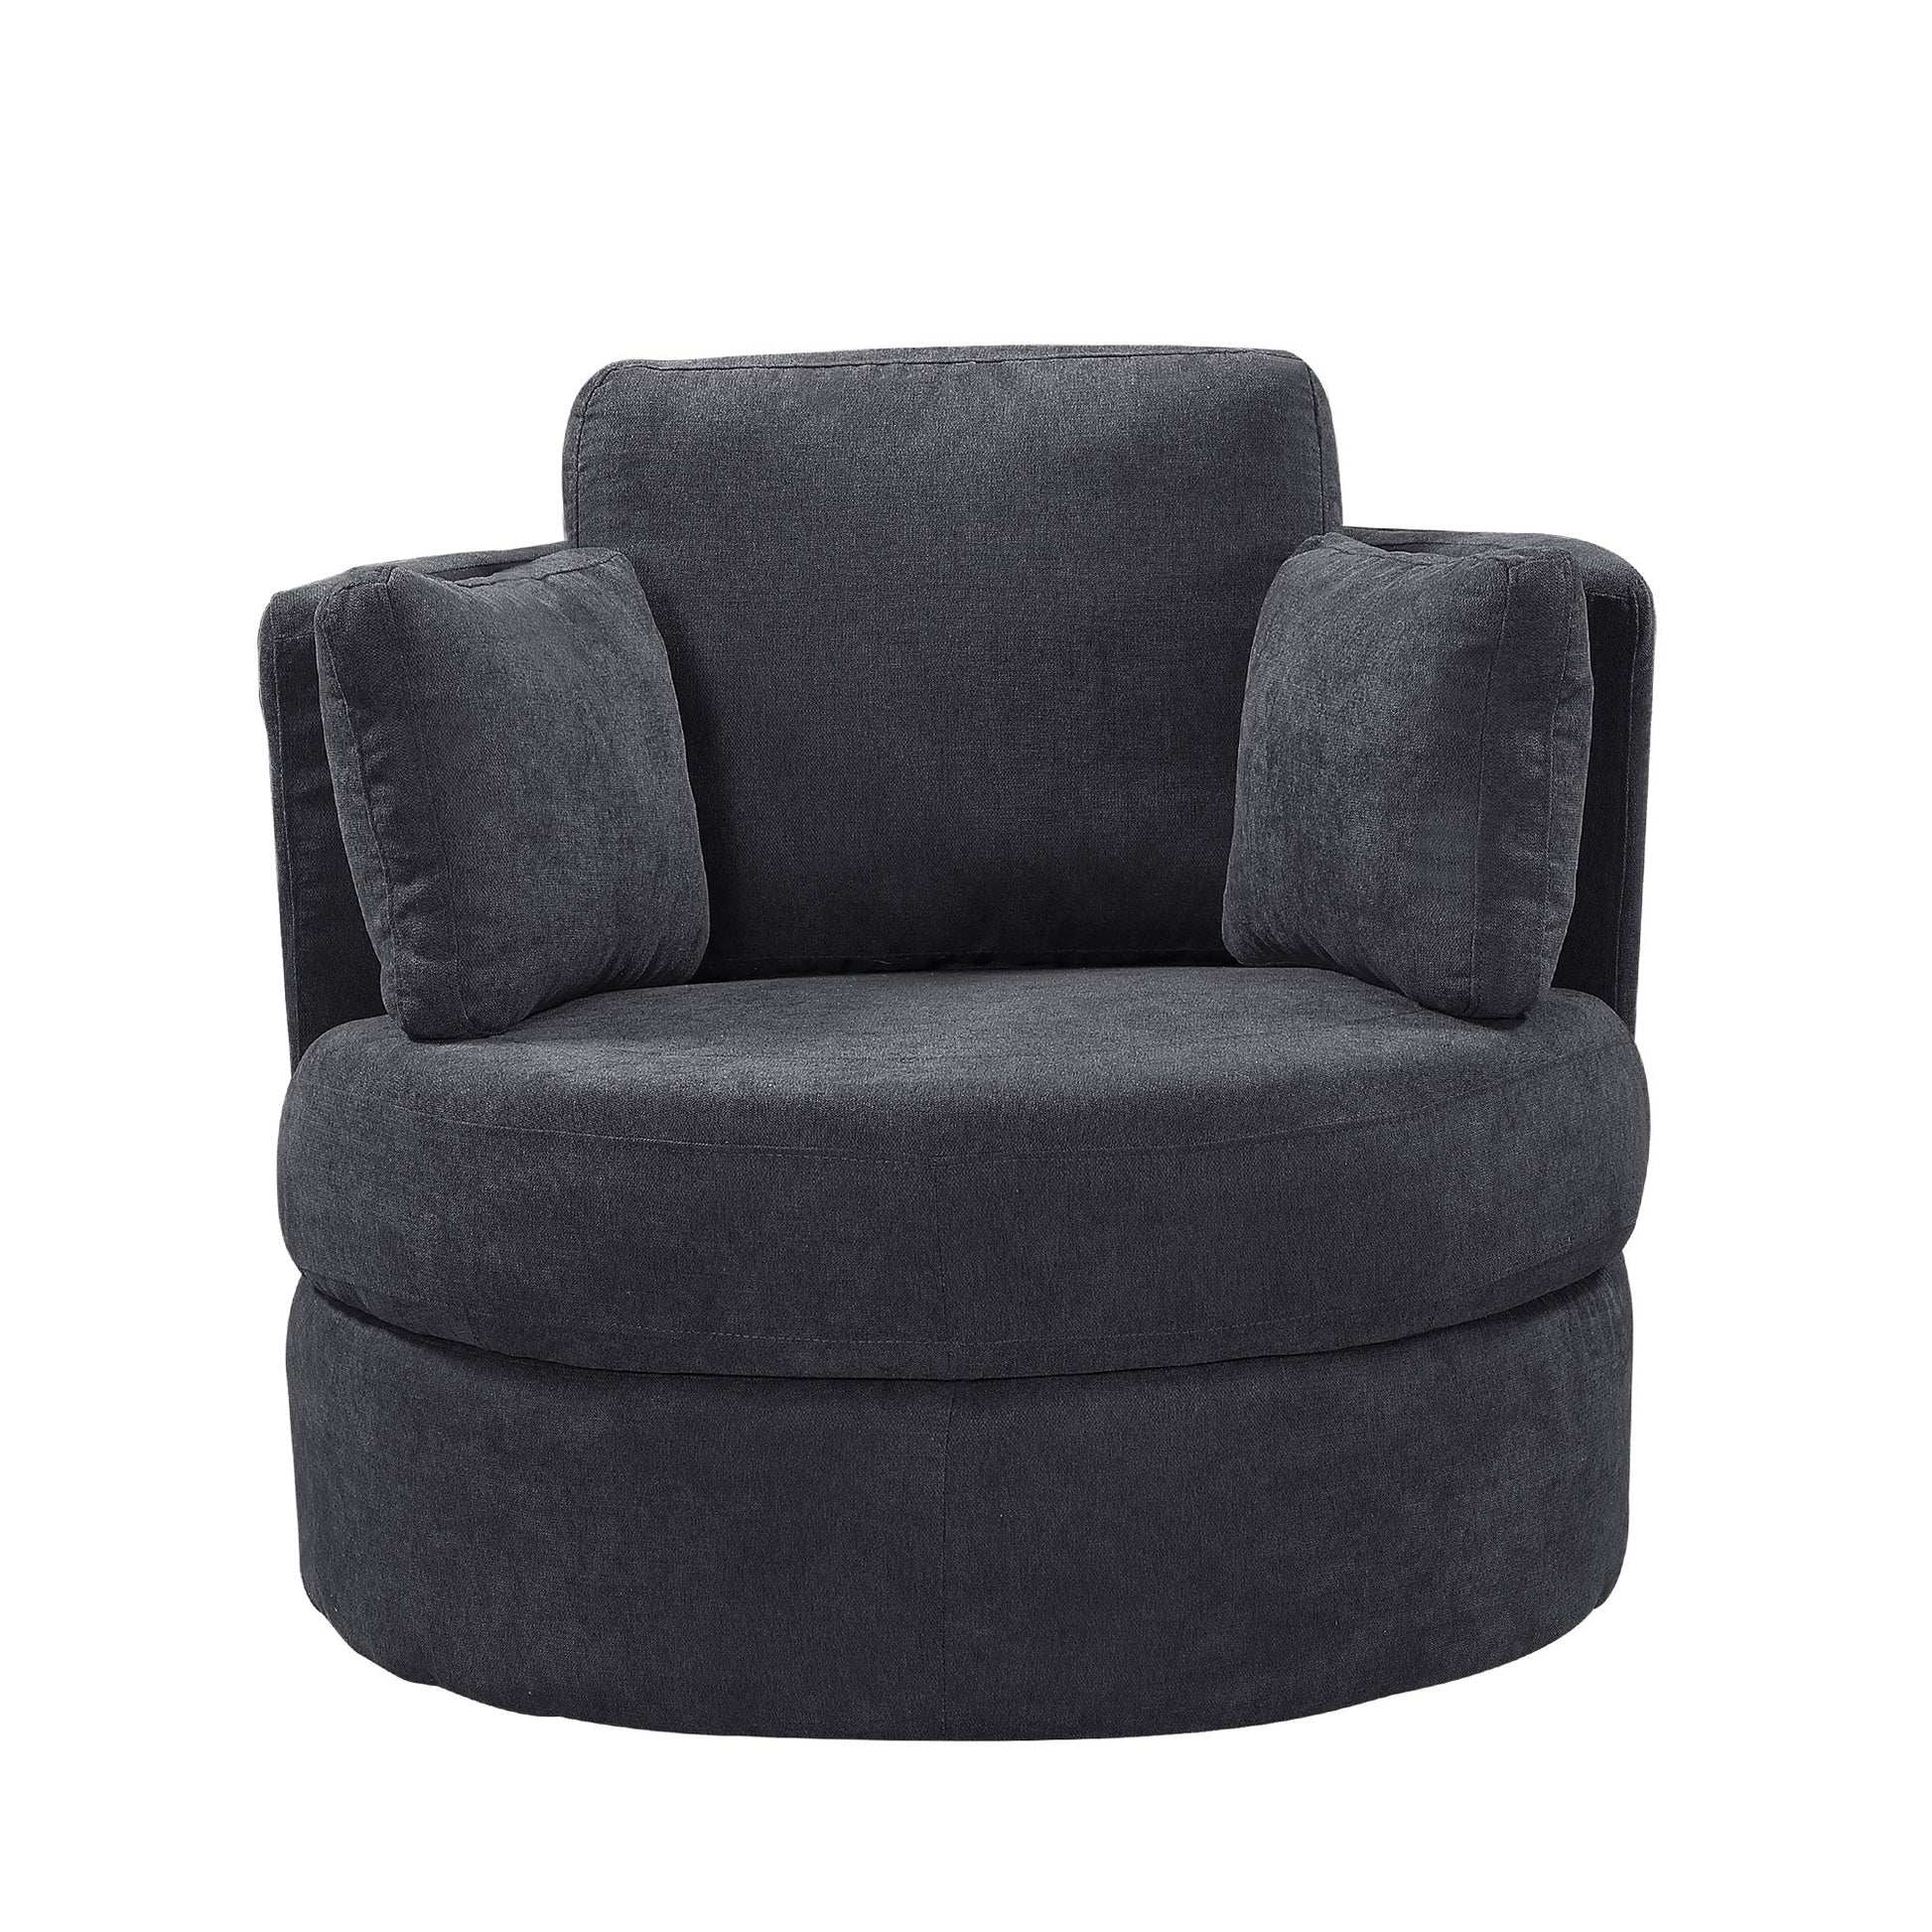 Dark Grey Swivel Accent Barrel Modern Round Chair with 3 Pillows and storage - Demine Essentials